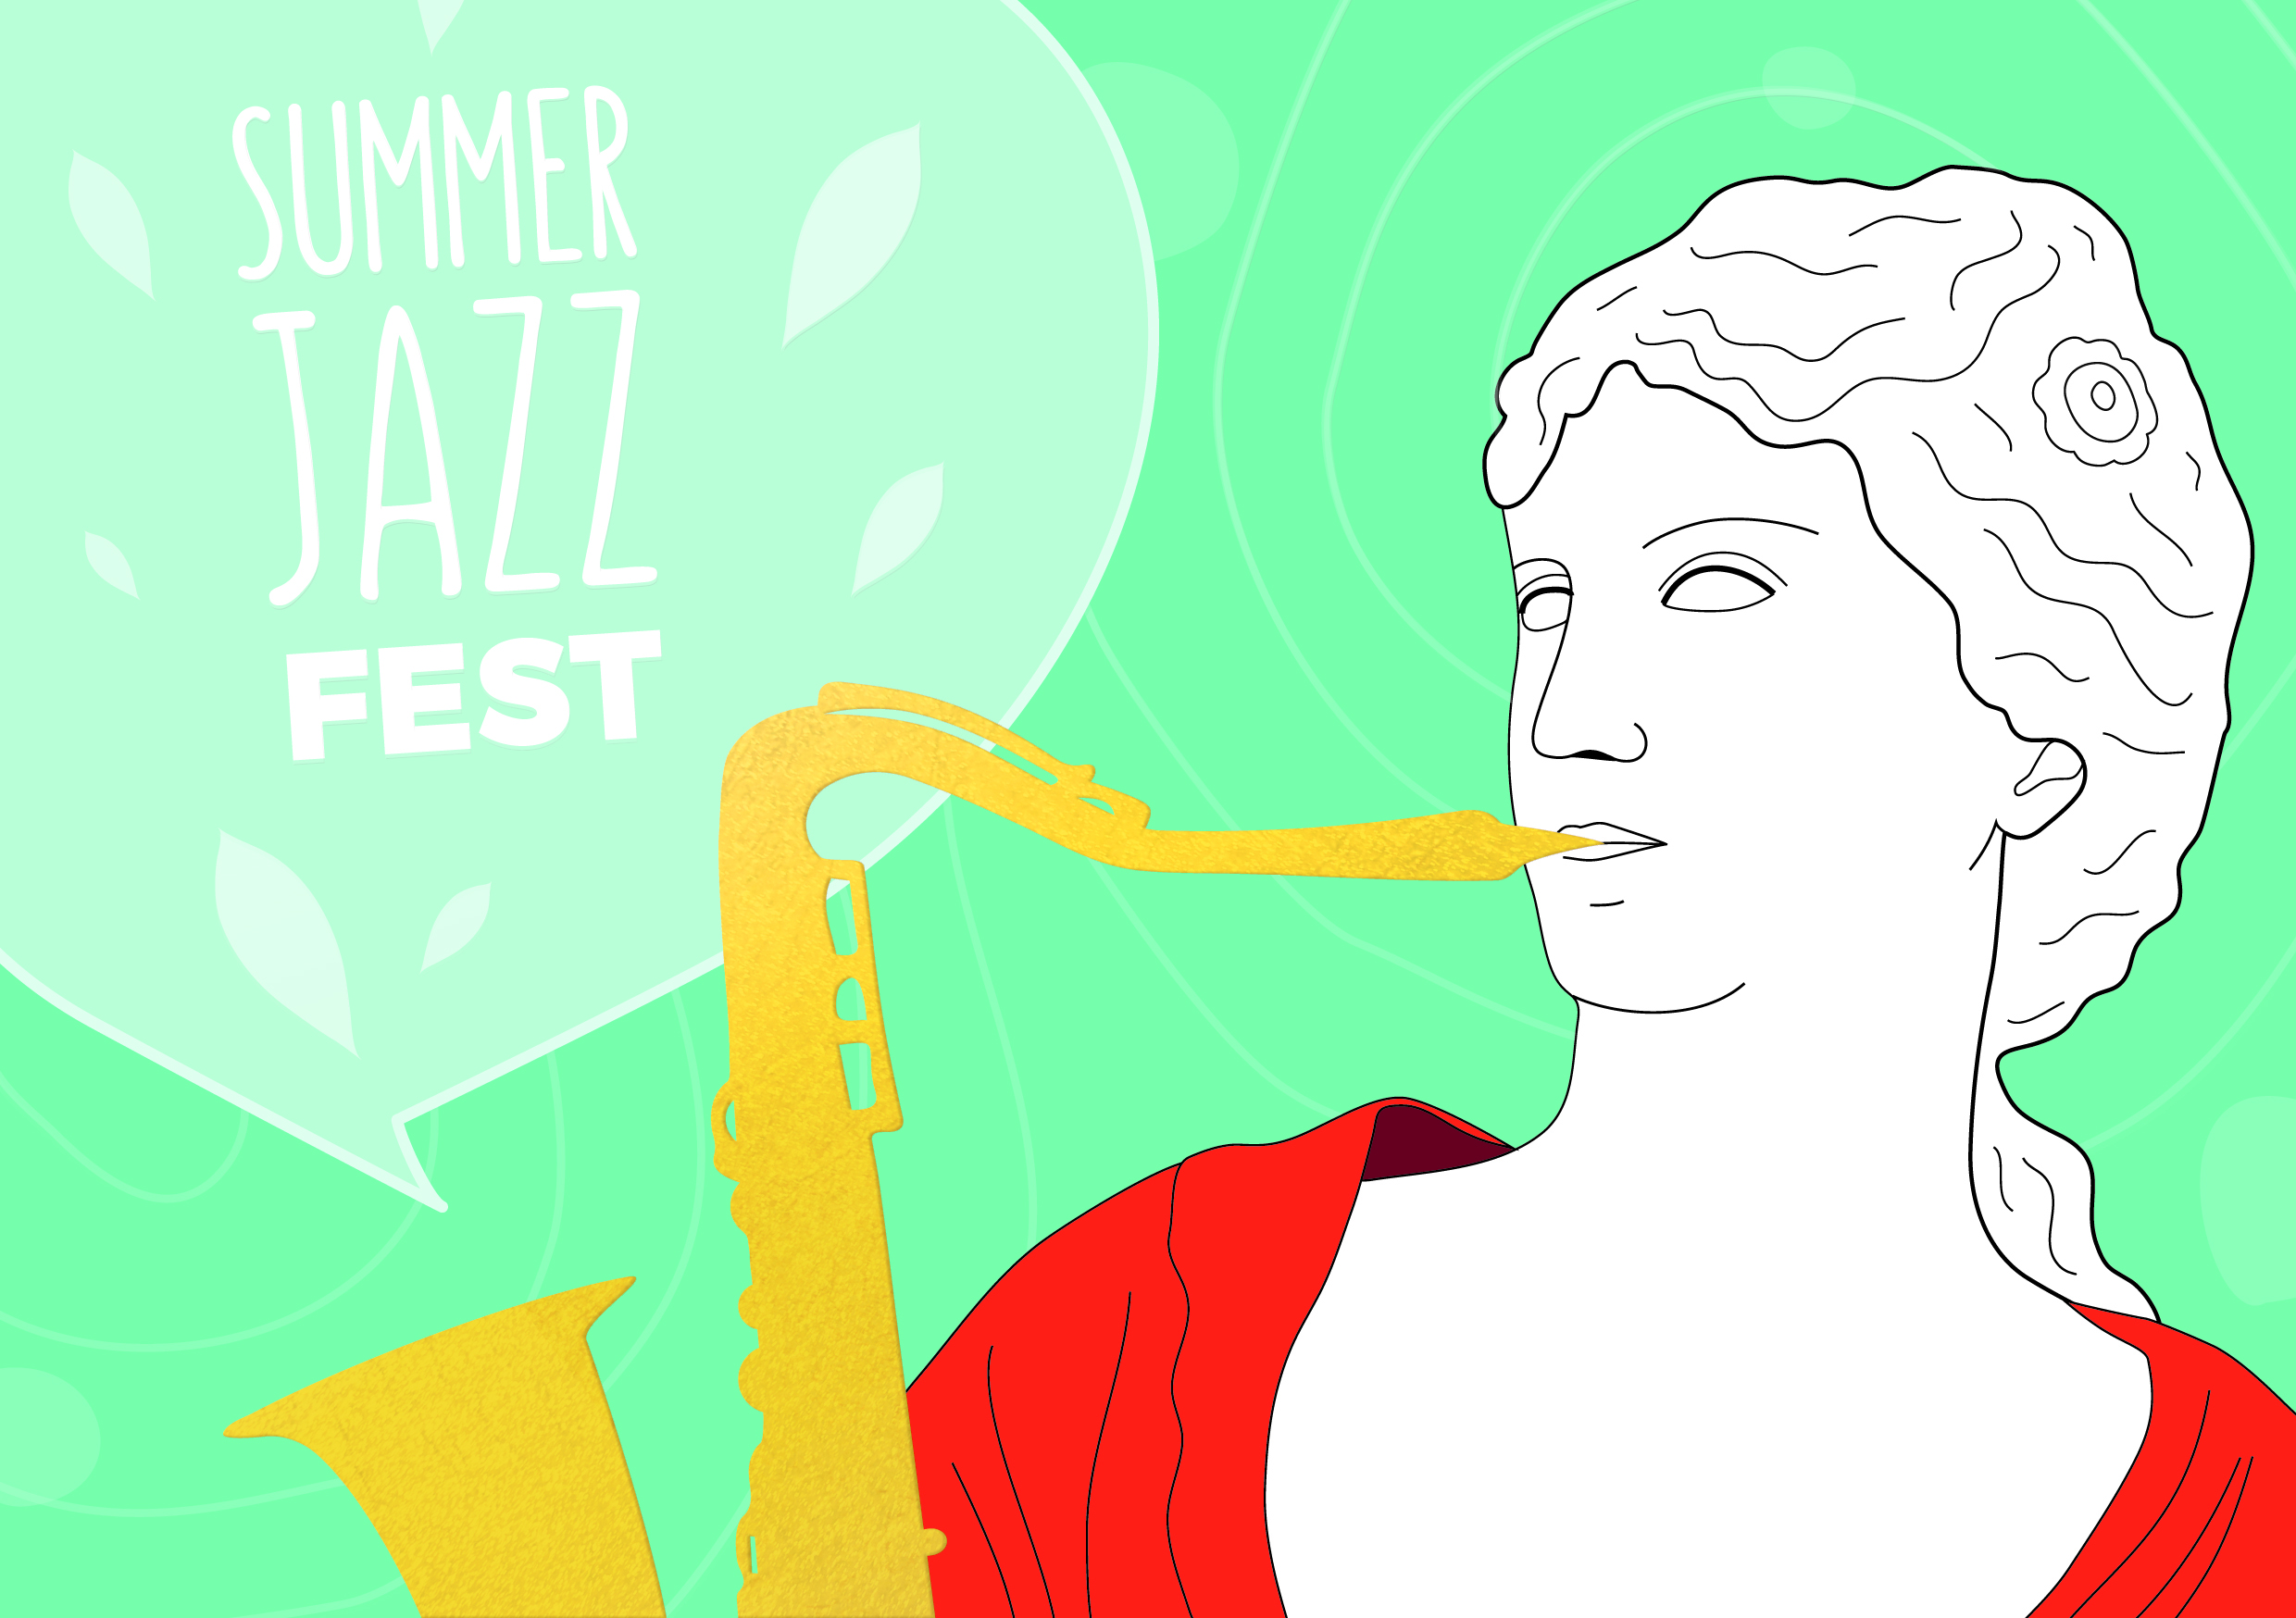 Открытка для фестиваля Summer Jazz Fest